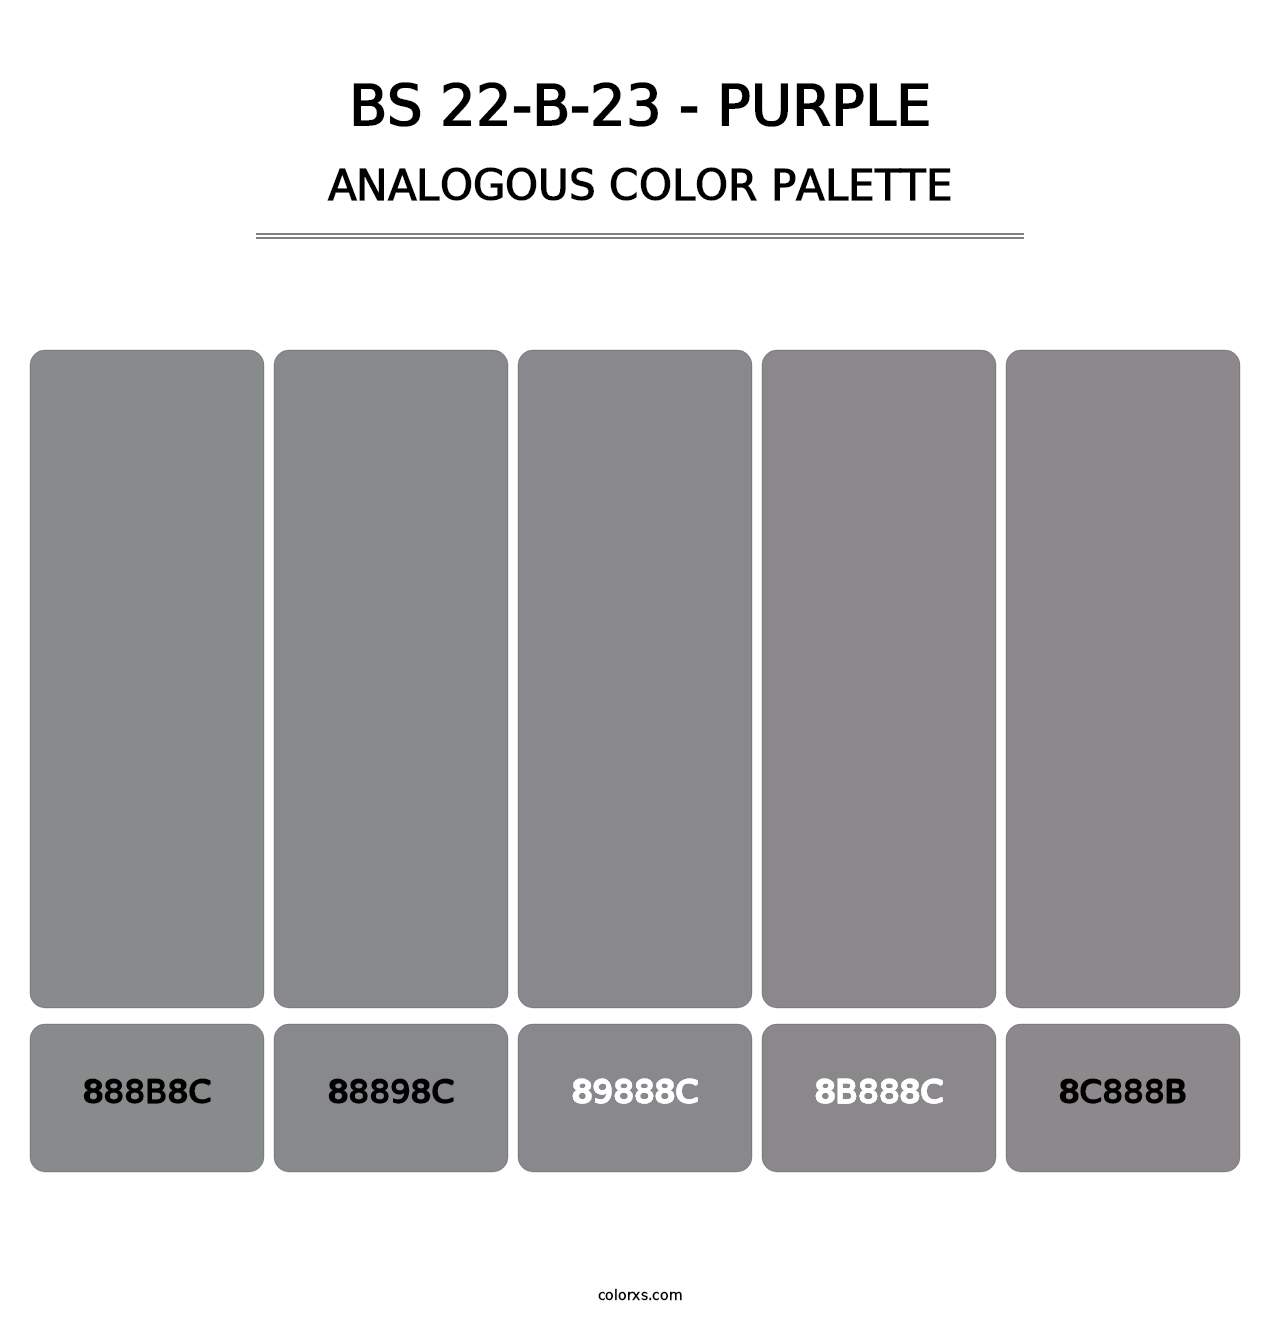 BS 22-B-23 - Purple - Analogous Color Palette